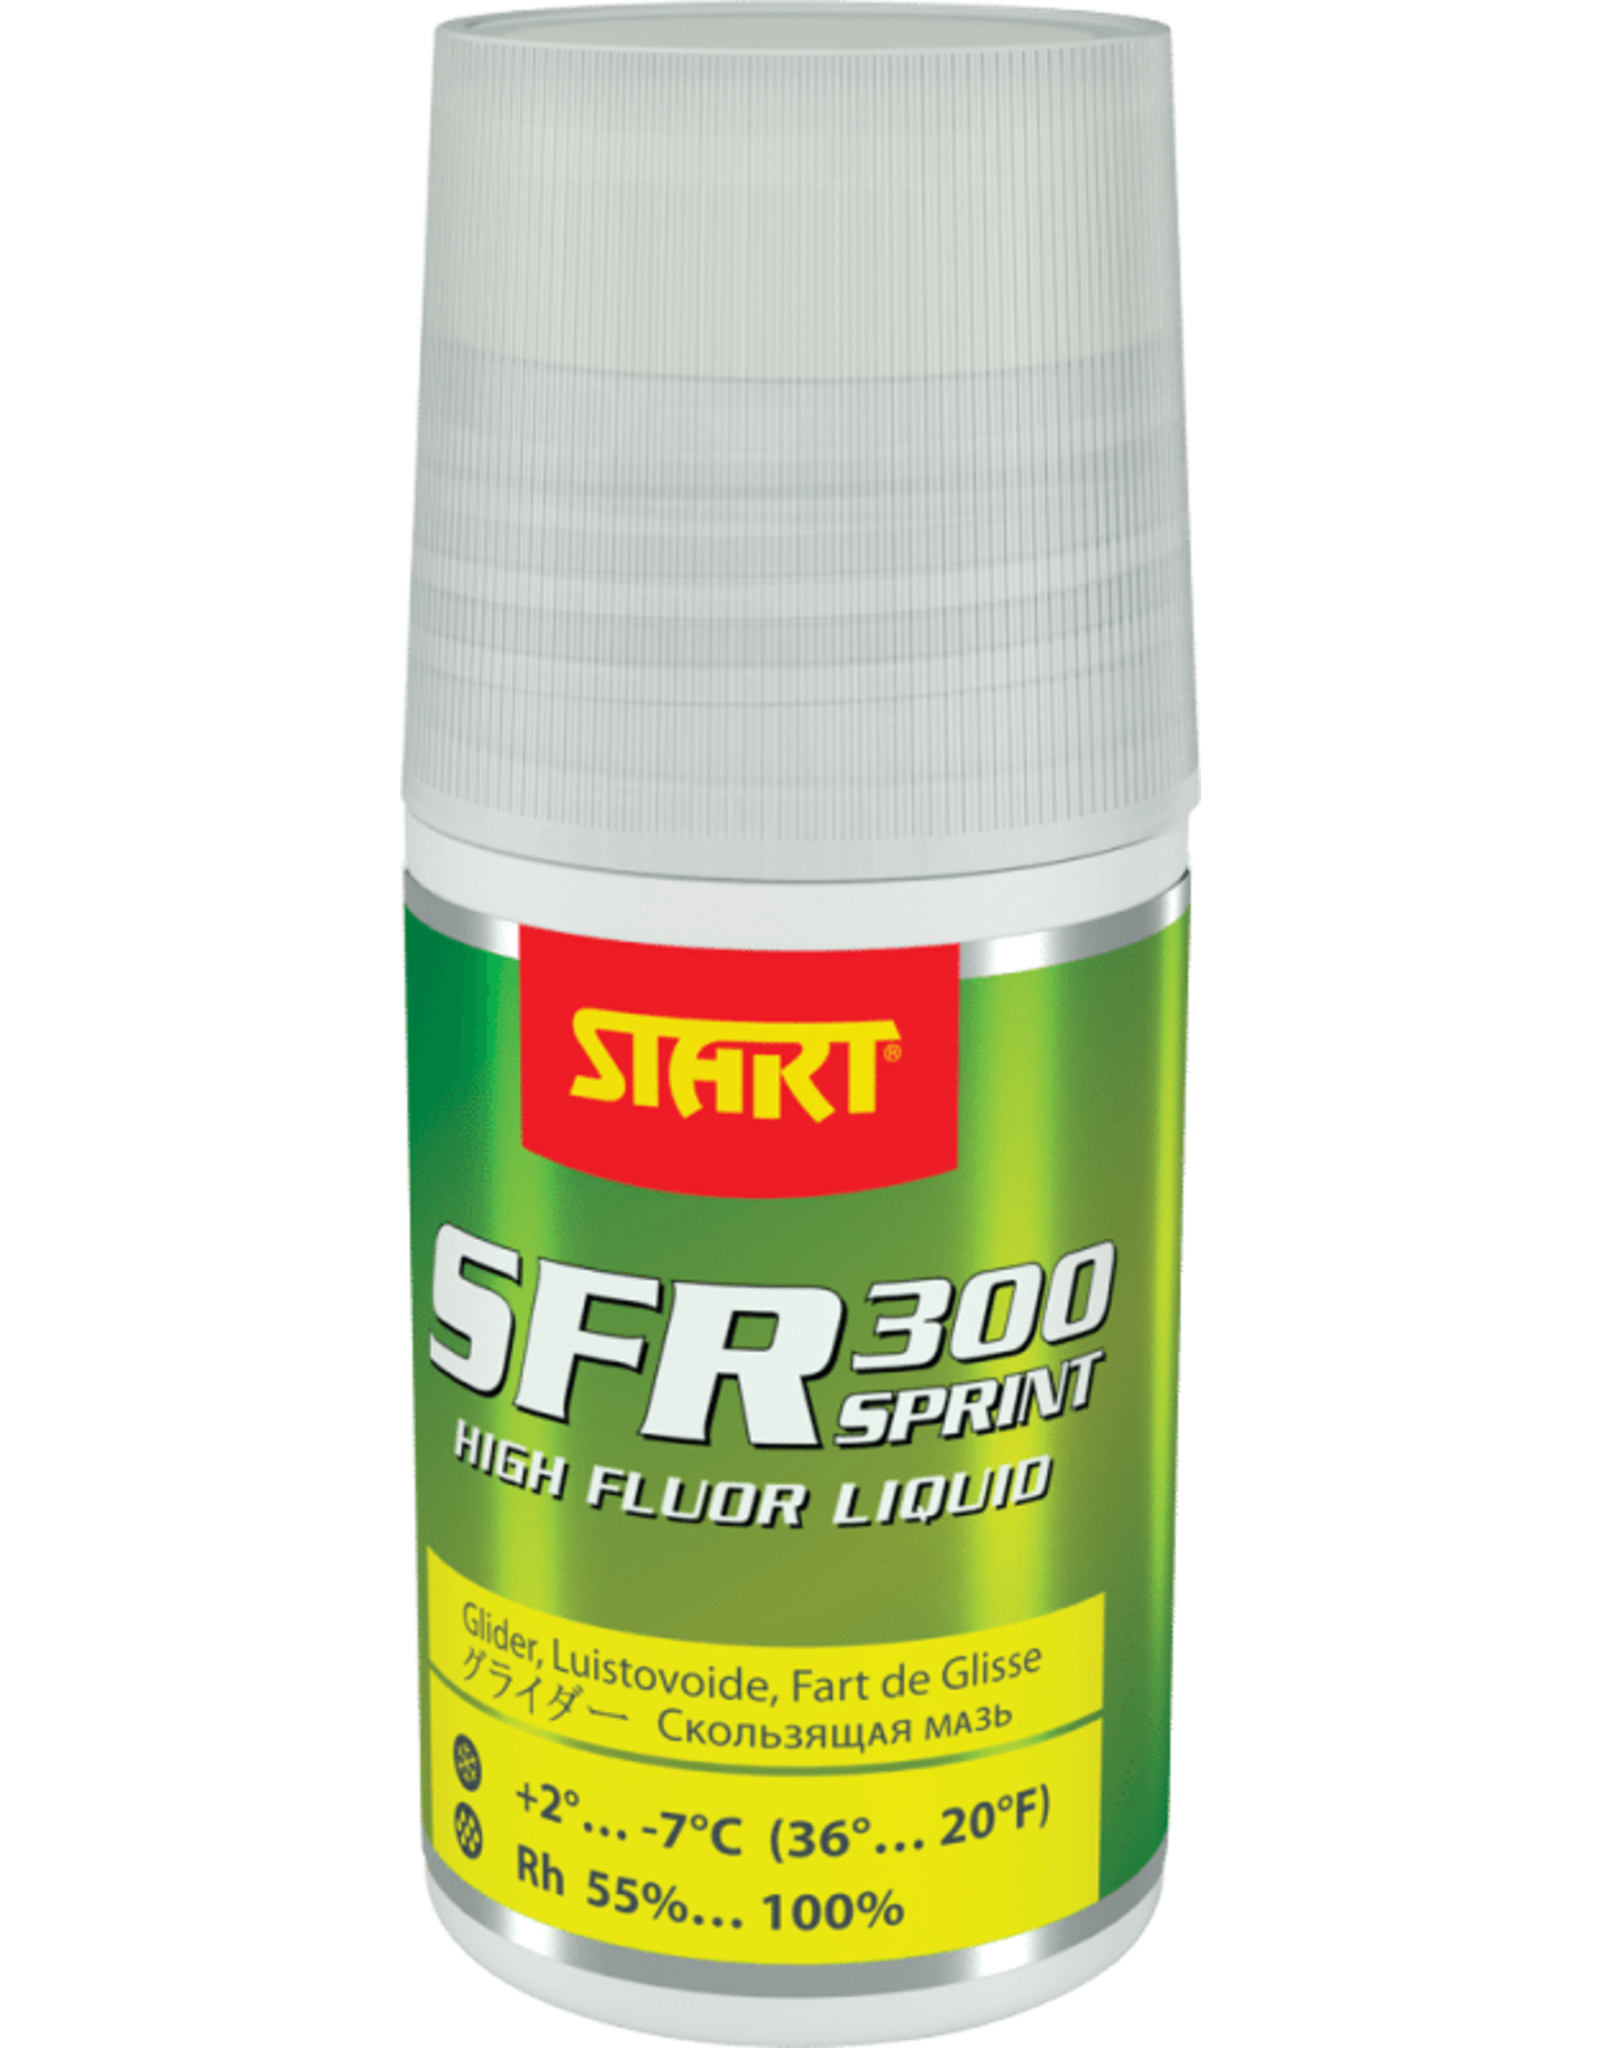 Start Start Glide SFR300 Sprint Liquid